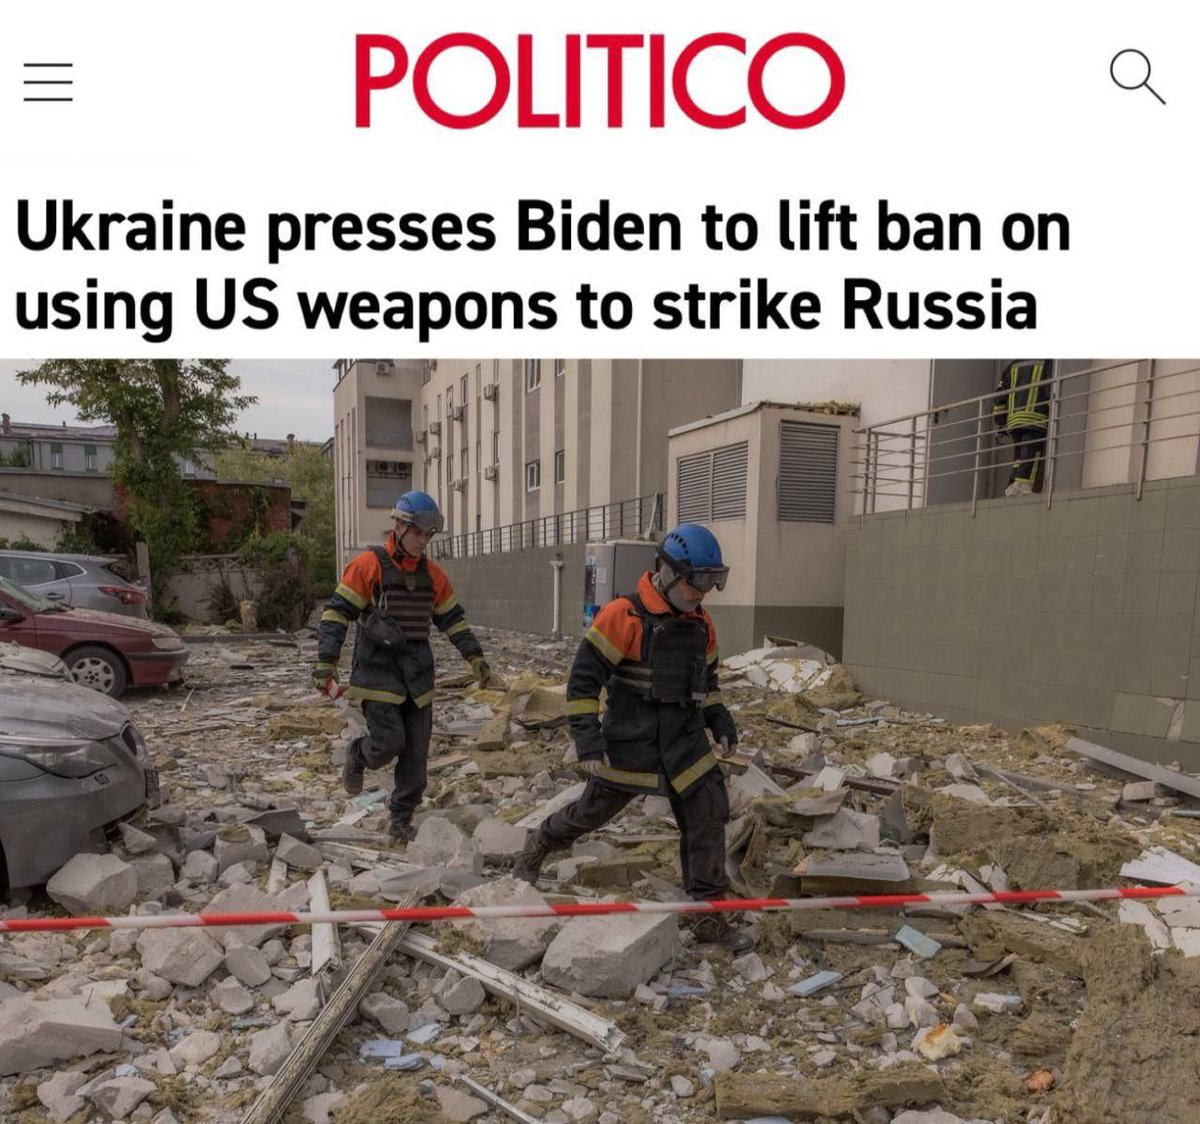 ‼️⚡️Politico: « L’Ukraine fait pression sur Biden pour qu’il lève l’interdiction d’utiliser des armes américaines pour frapper la Russie » : Kiev souhaite que Biden autorise les frappes avec des armes américaines sur le territoire russe. « Les responsables ukrainiens redoublent